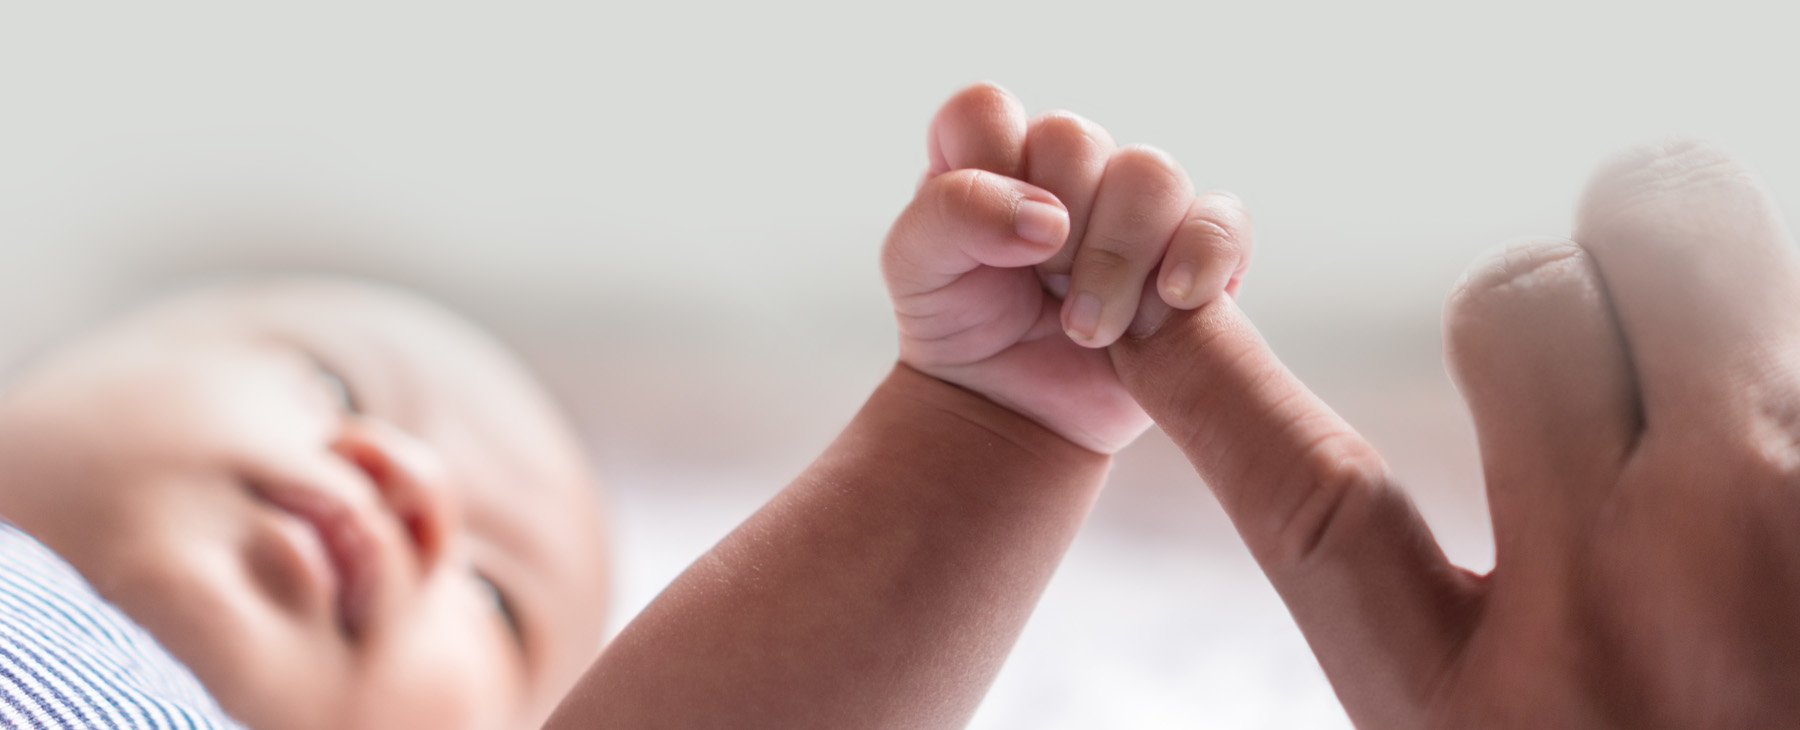 Un bebé recién nacido se agarra al dedo de su padre